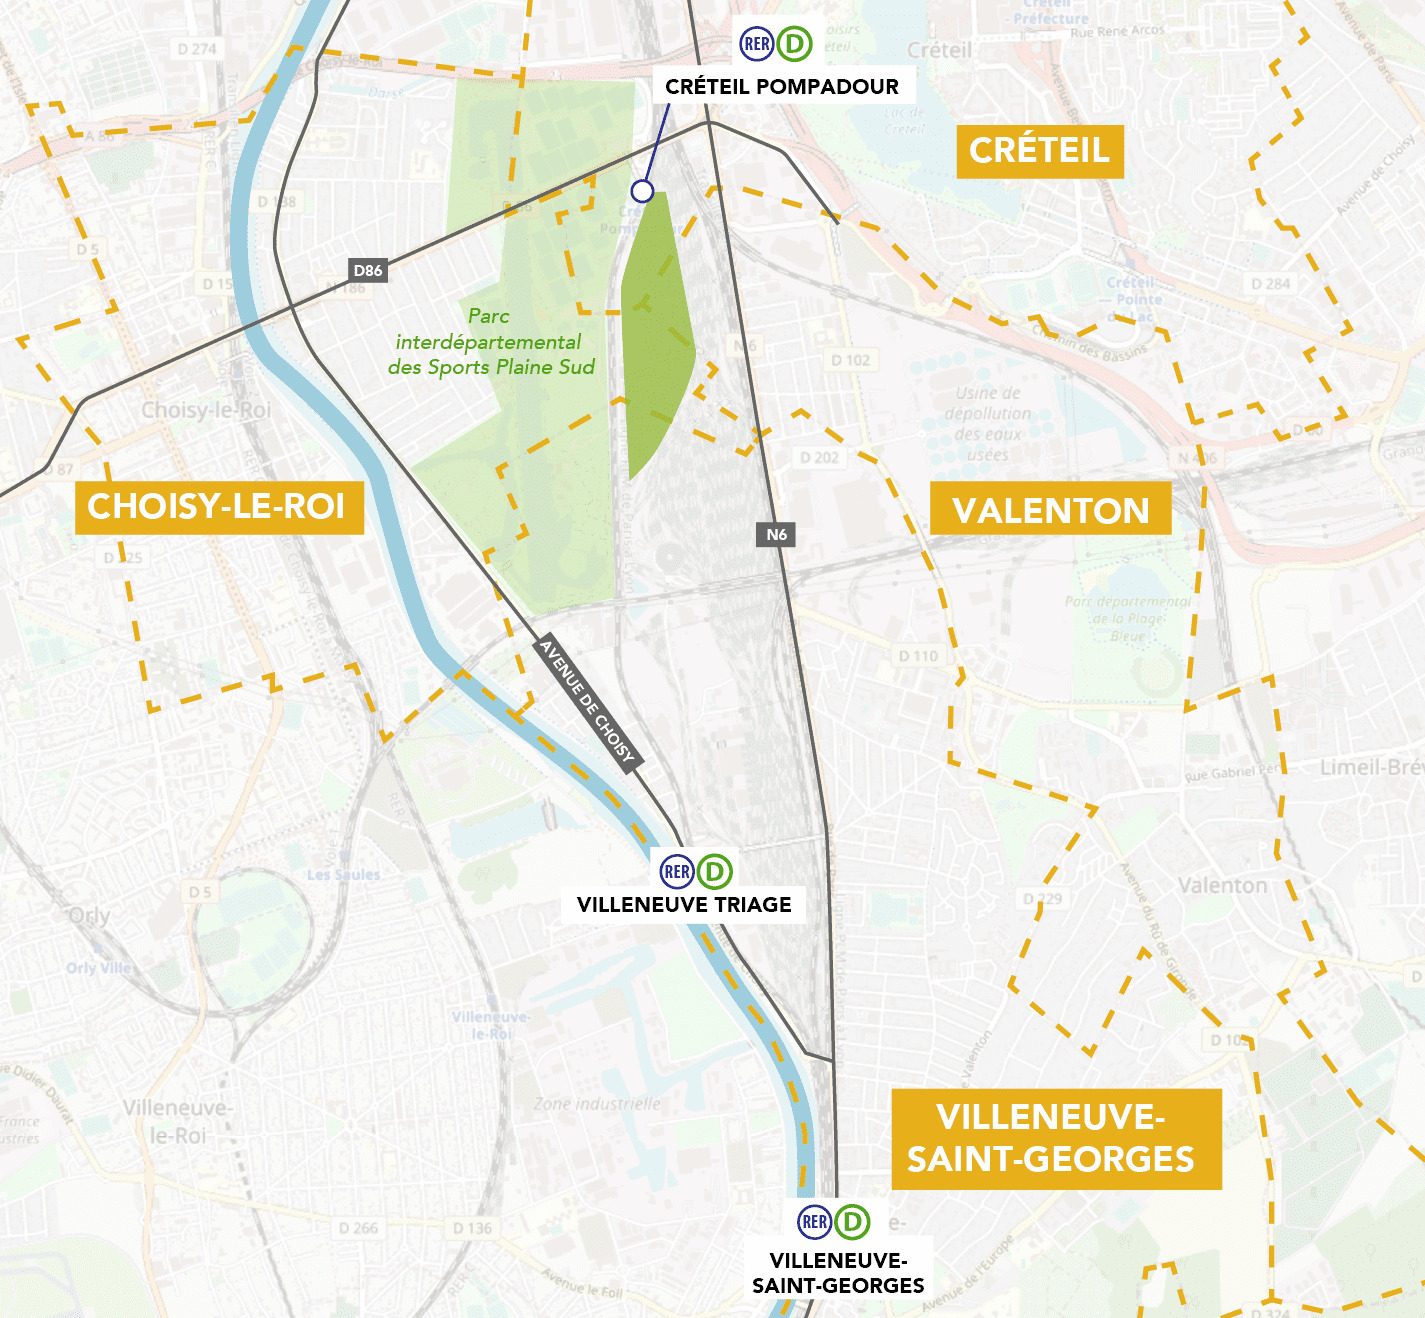 Plan du site de Villneuve (Photo: Transilien SNCF)